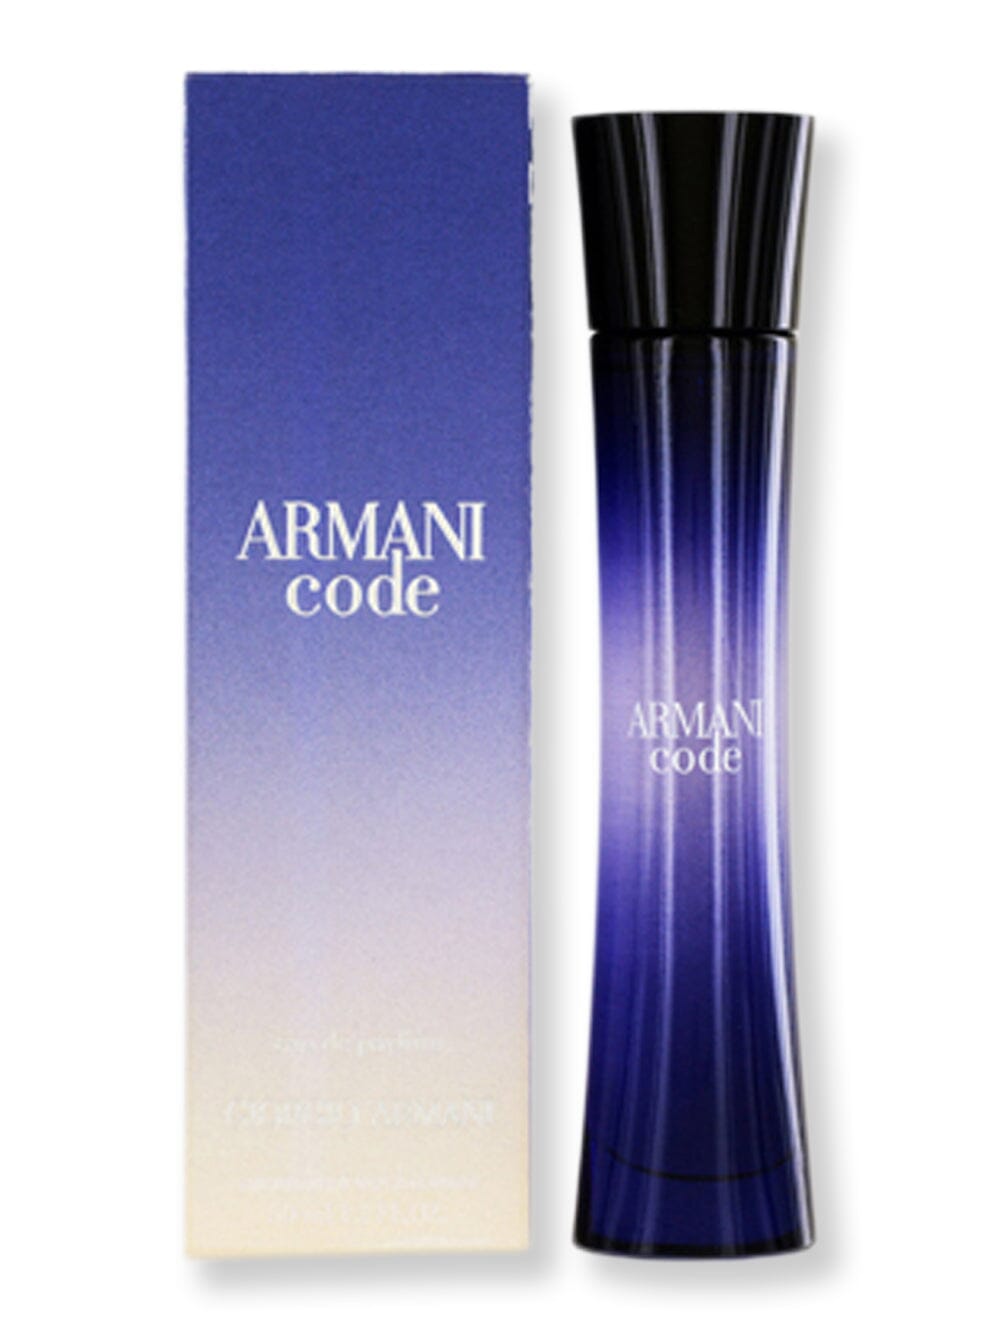 GIORGIO ARMANI GIORGIO ARMANI Armani Code Femme EDP Spray 2.5 oz Perfume 